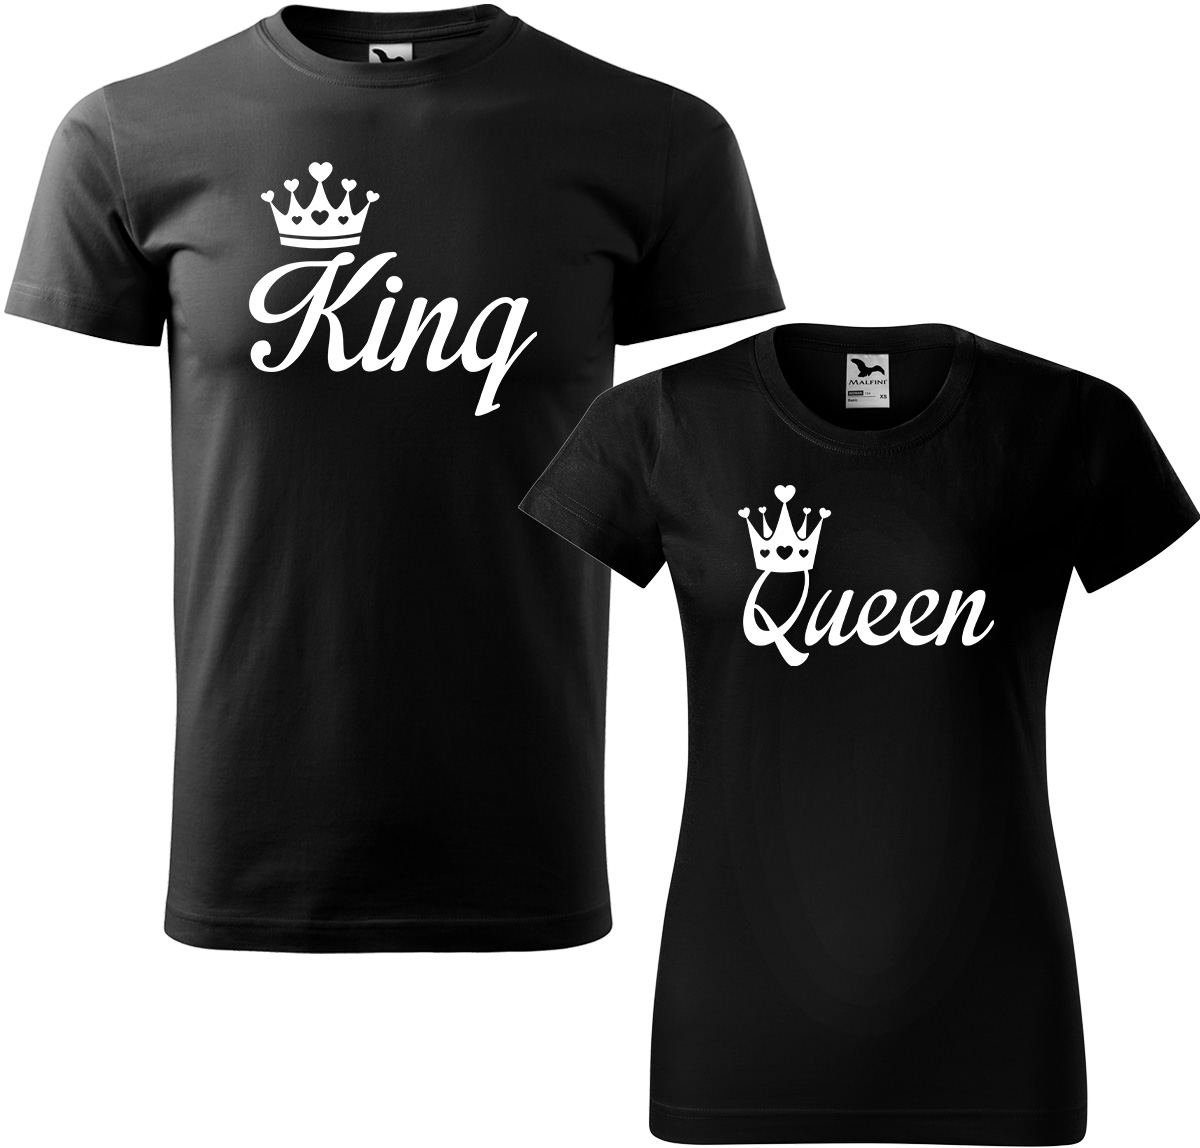 Trička pro páry - King a queen Barva: Černá (01), Velikost dámské tričko: S, Velikost pánské tričko: S